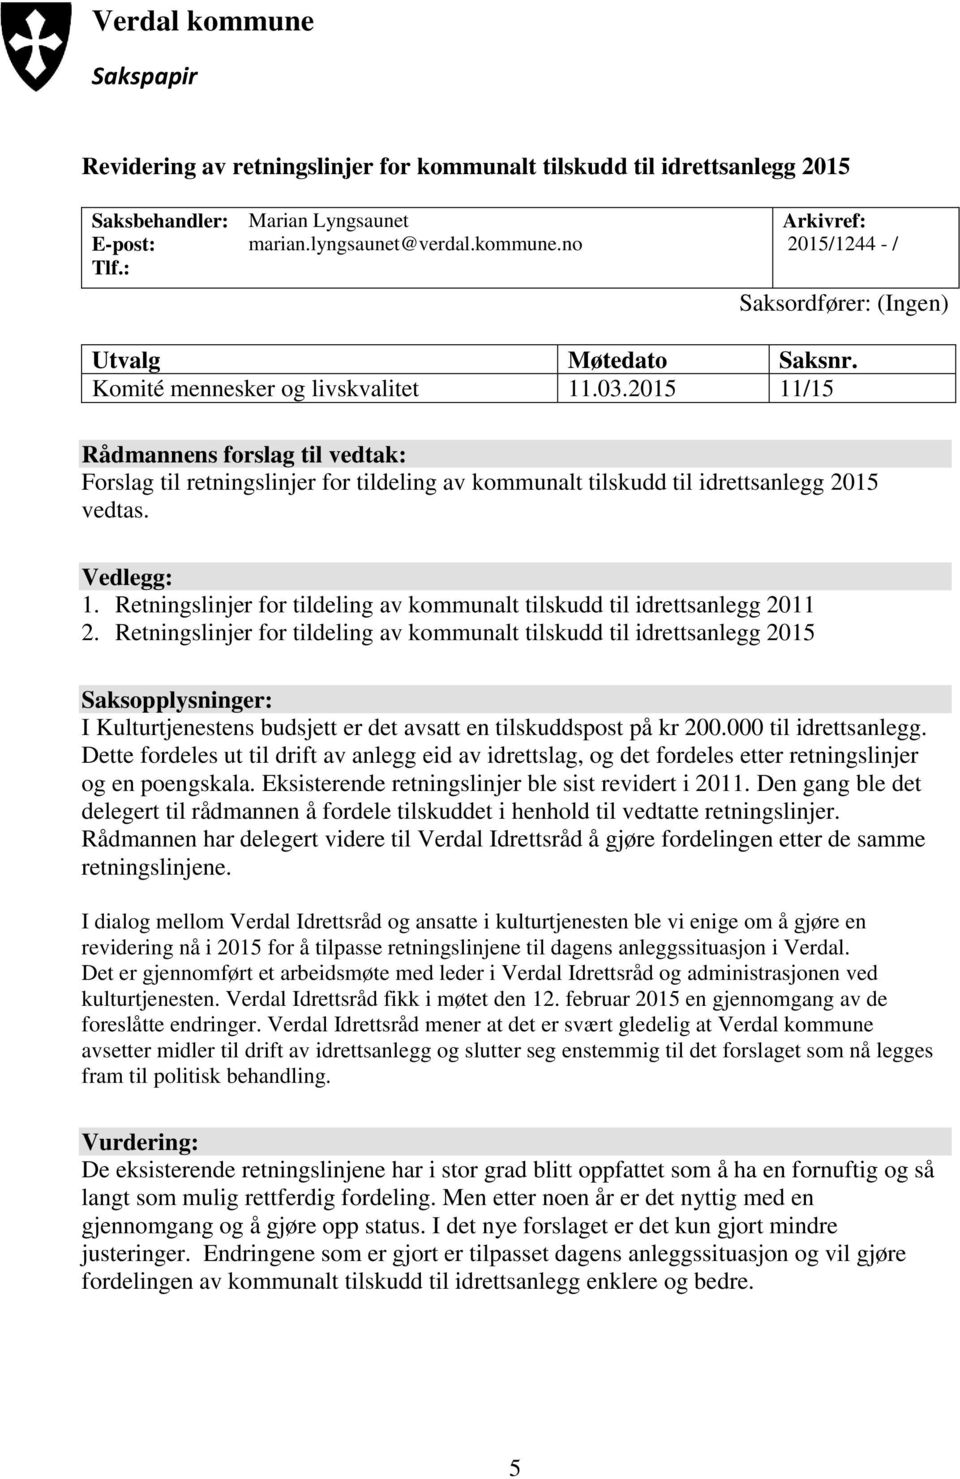 Retningslinjer for tildeling av kommunalt tilskudd til idrettsanlegg 2011 2.